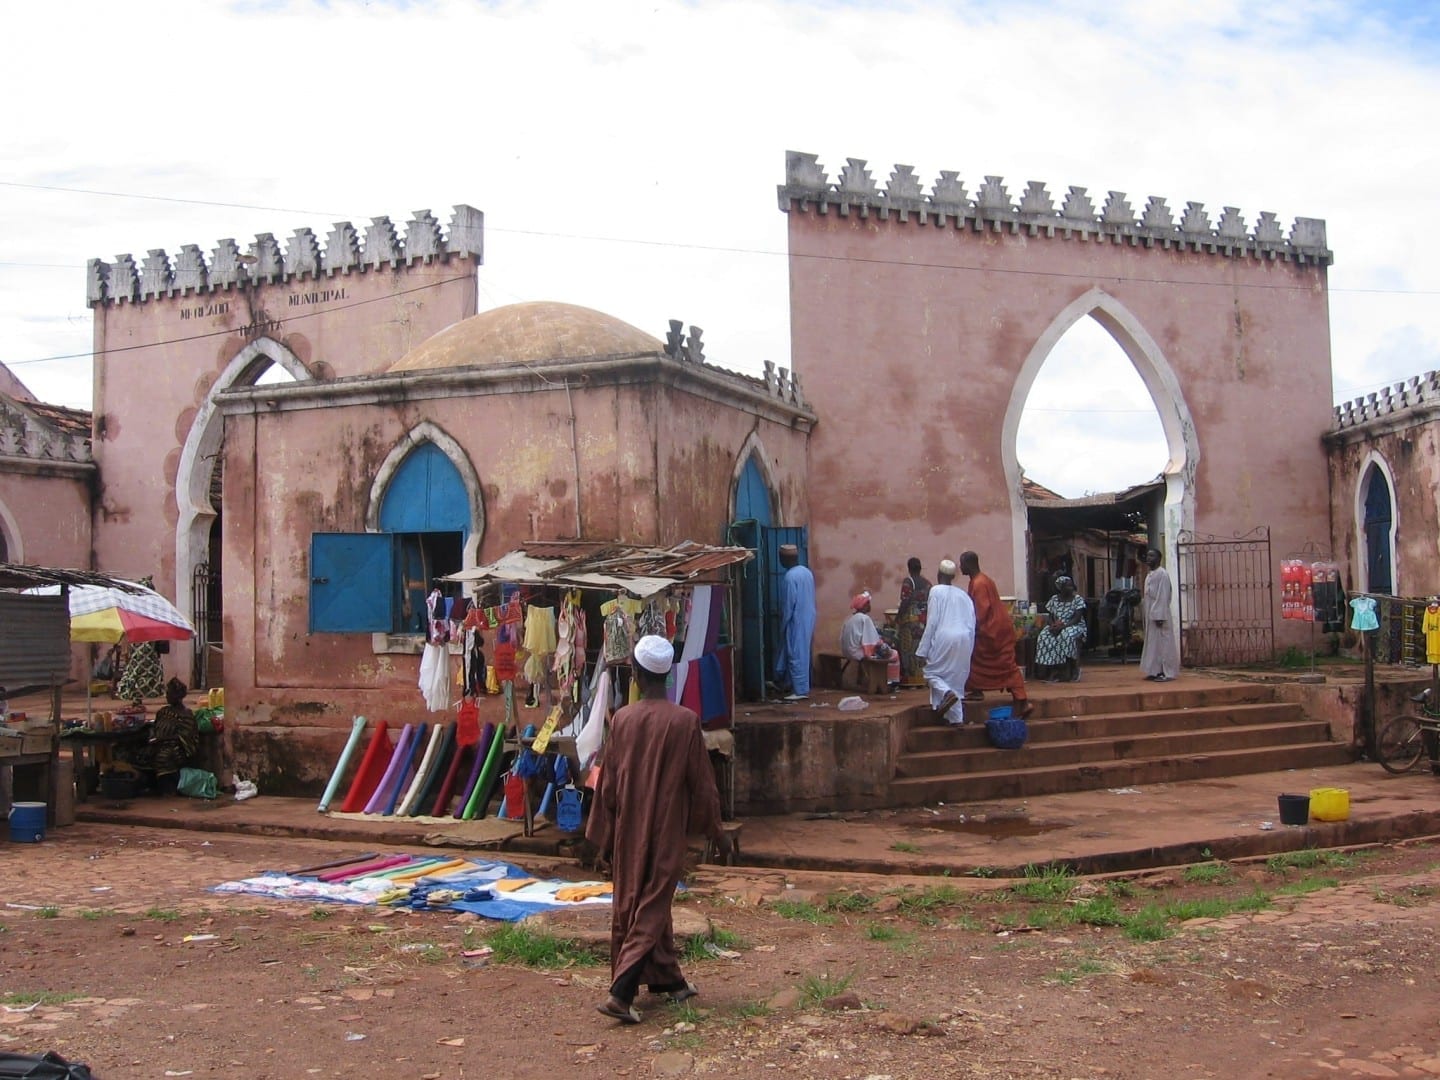 El viejo mercado de Bafatá Guinea-Bisáu